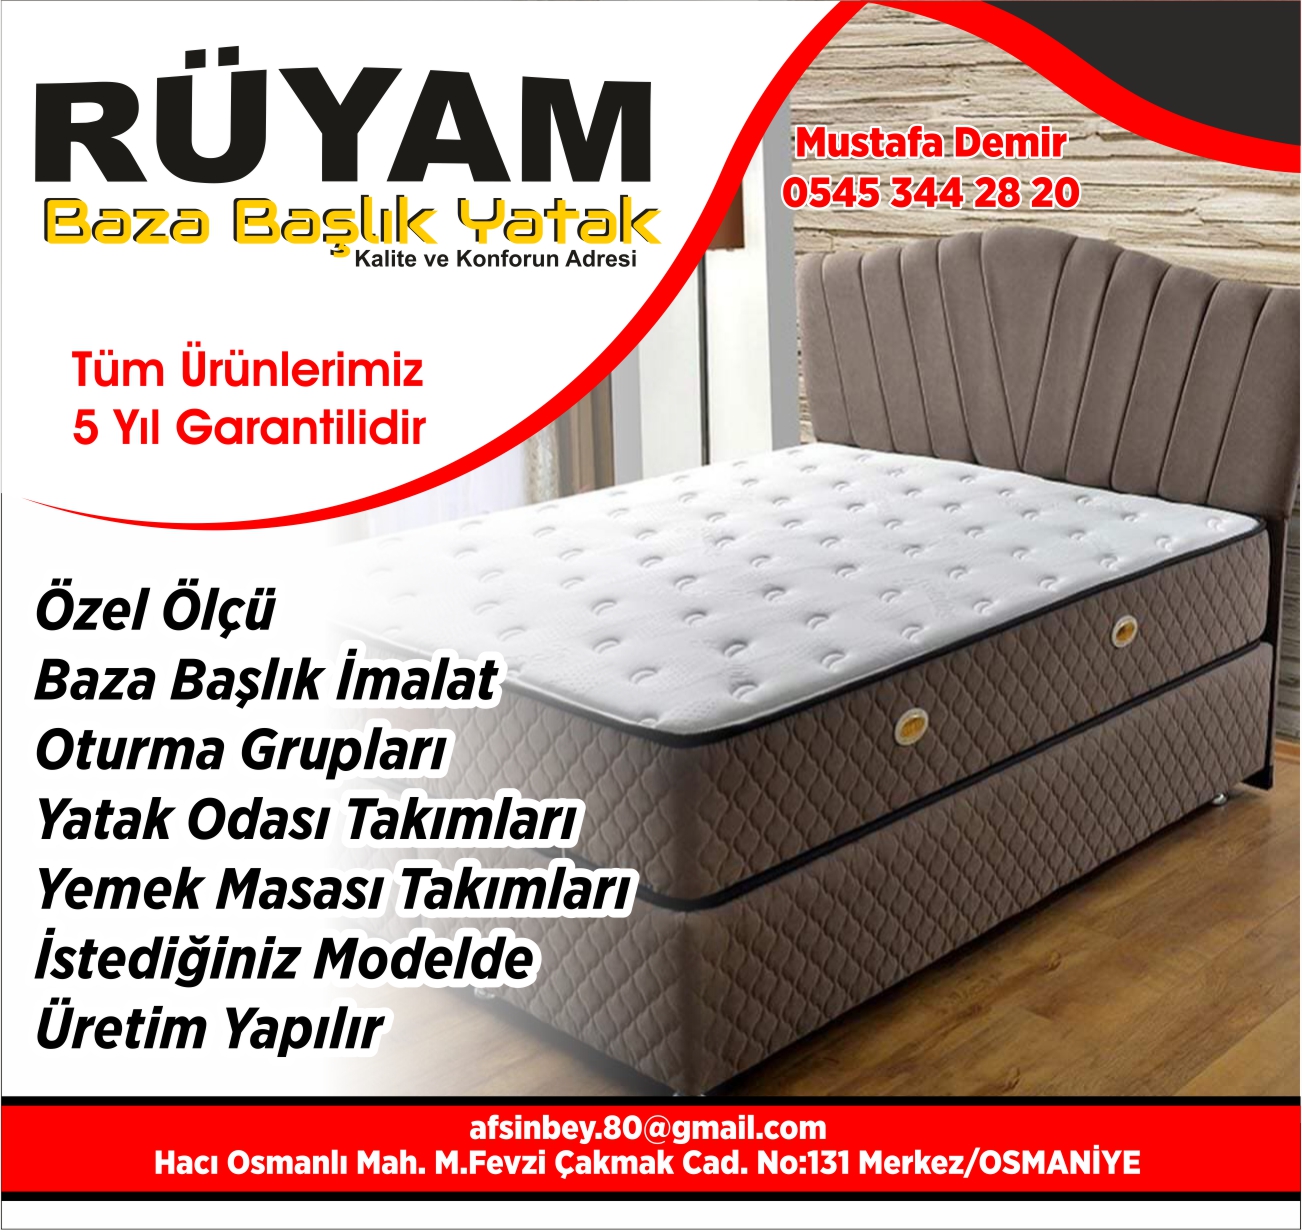 ruyam-baza-baslik-osmaniye